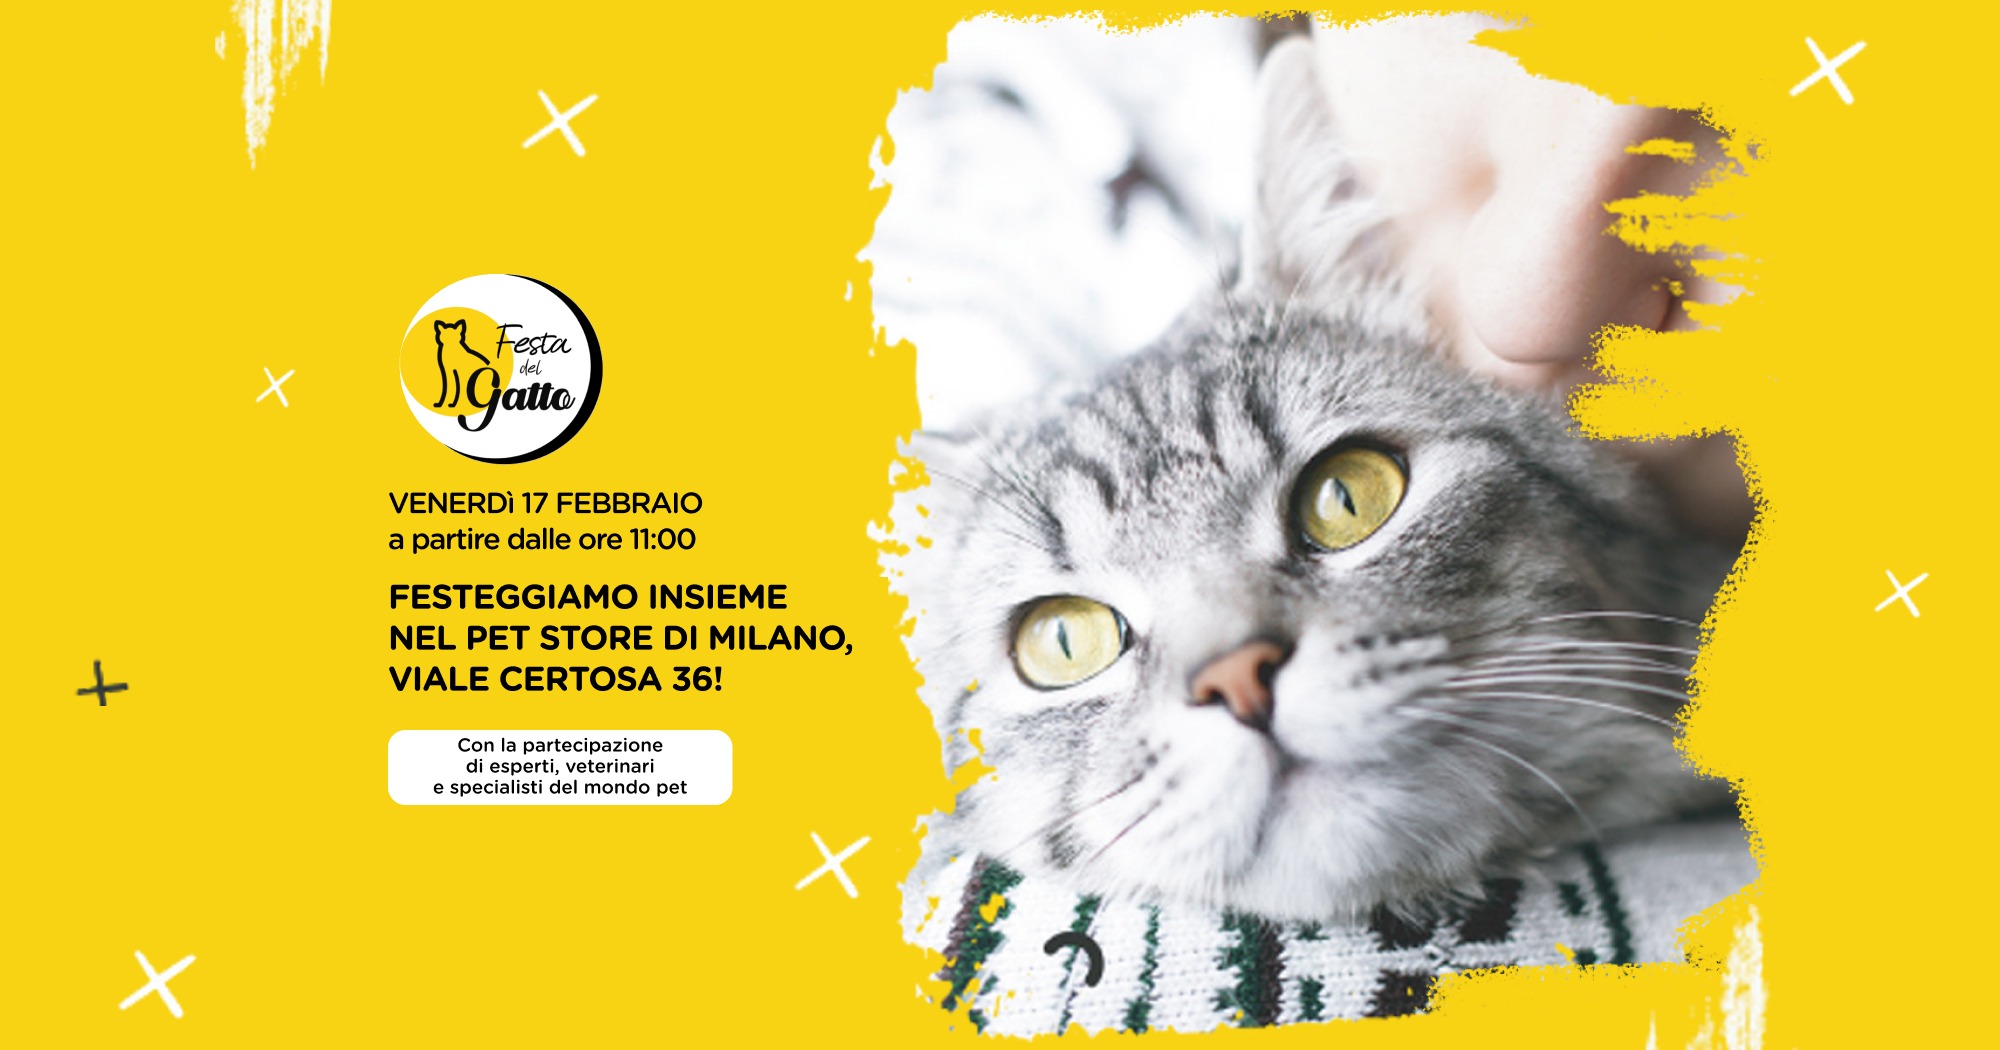 Evento Festa del Gatto nel Pet store di Milano Certosa